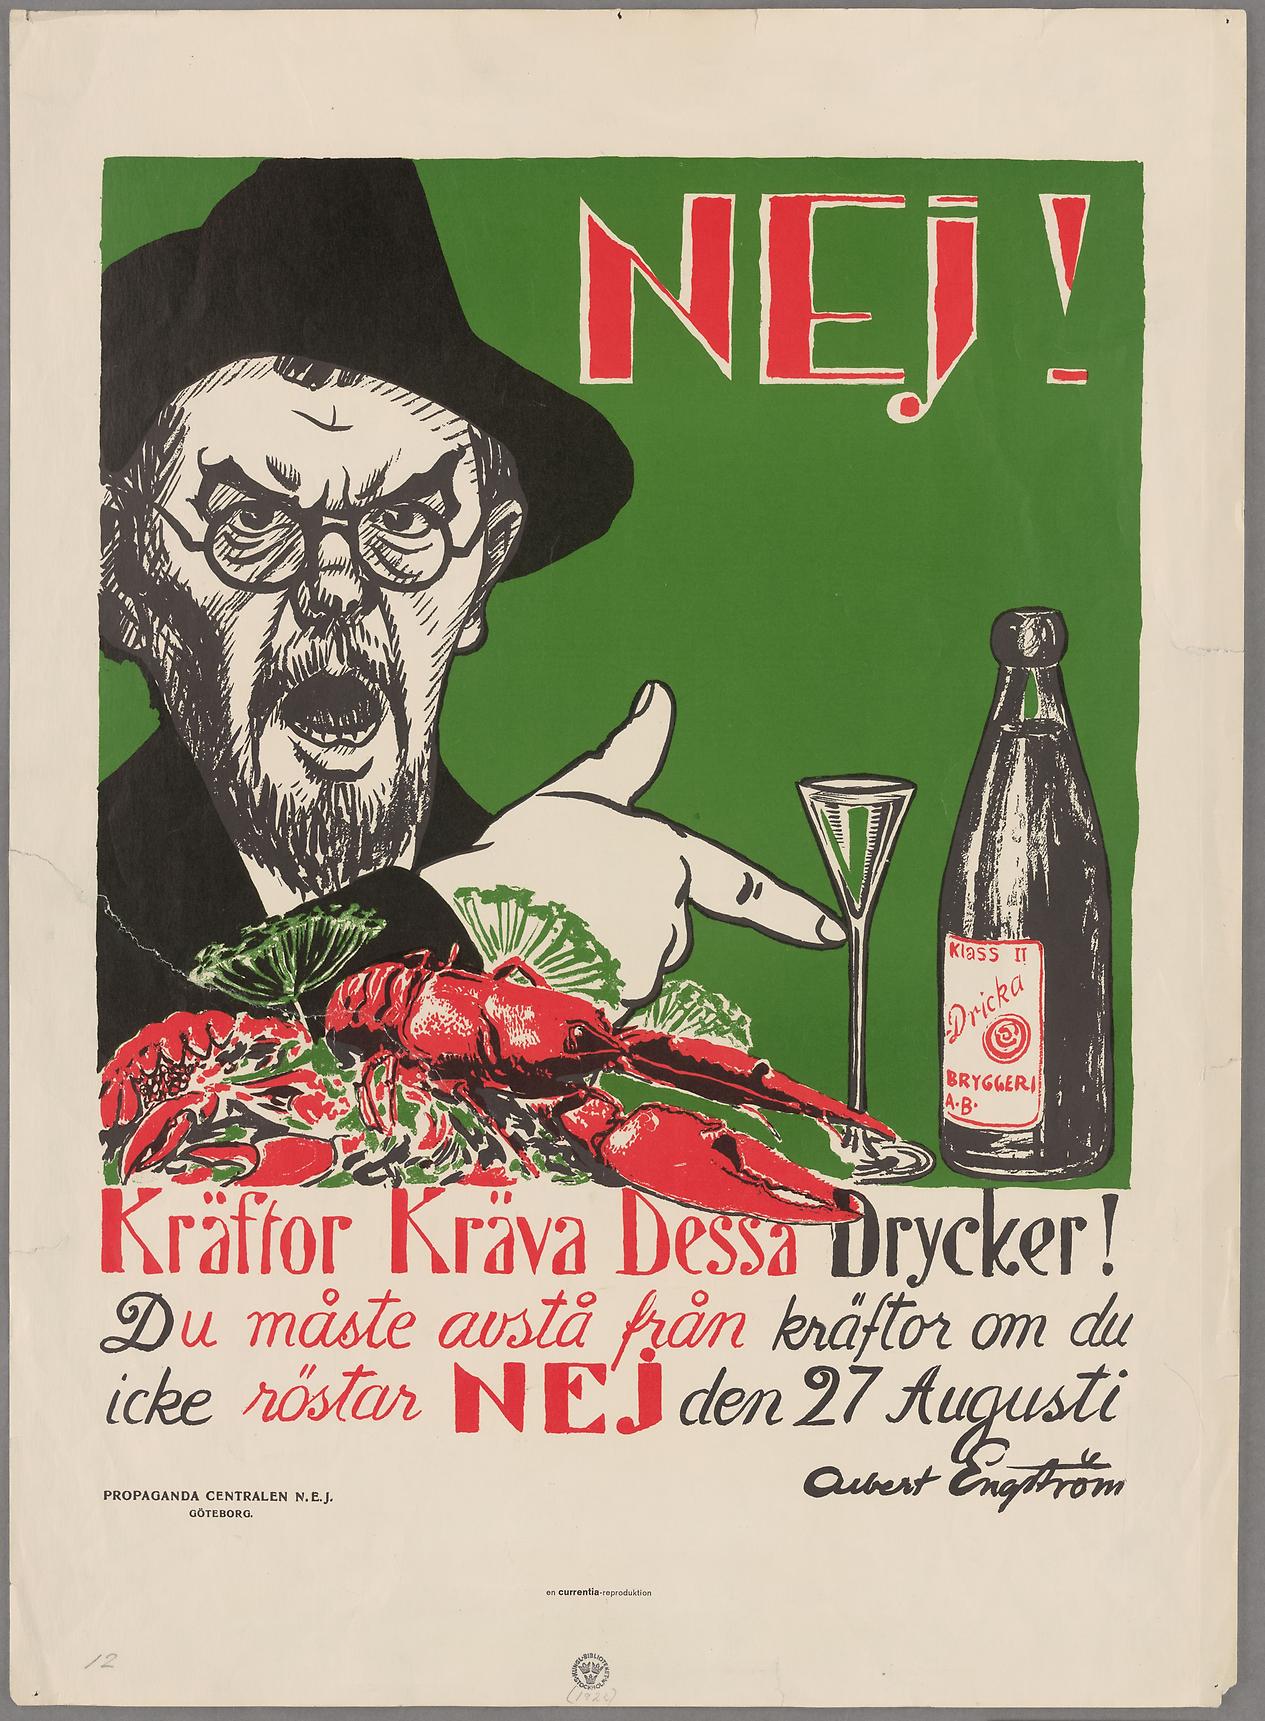 Nej! Kräftor kräva dessa drycker! Albert Engström 1922